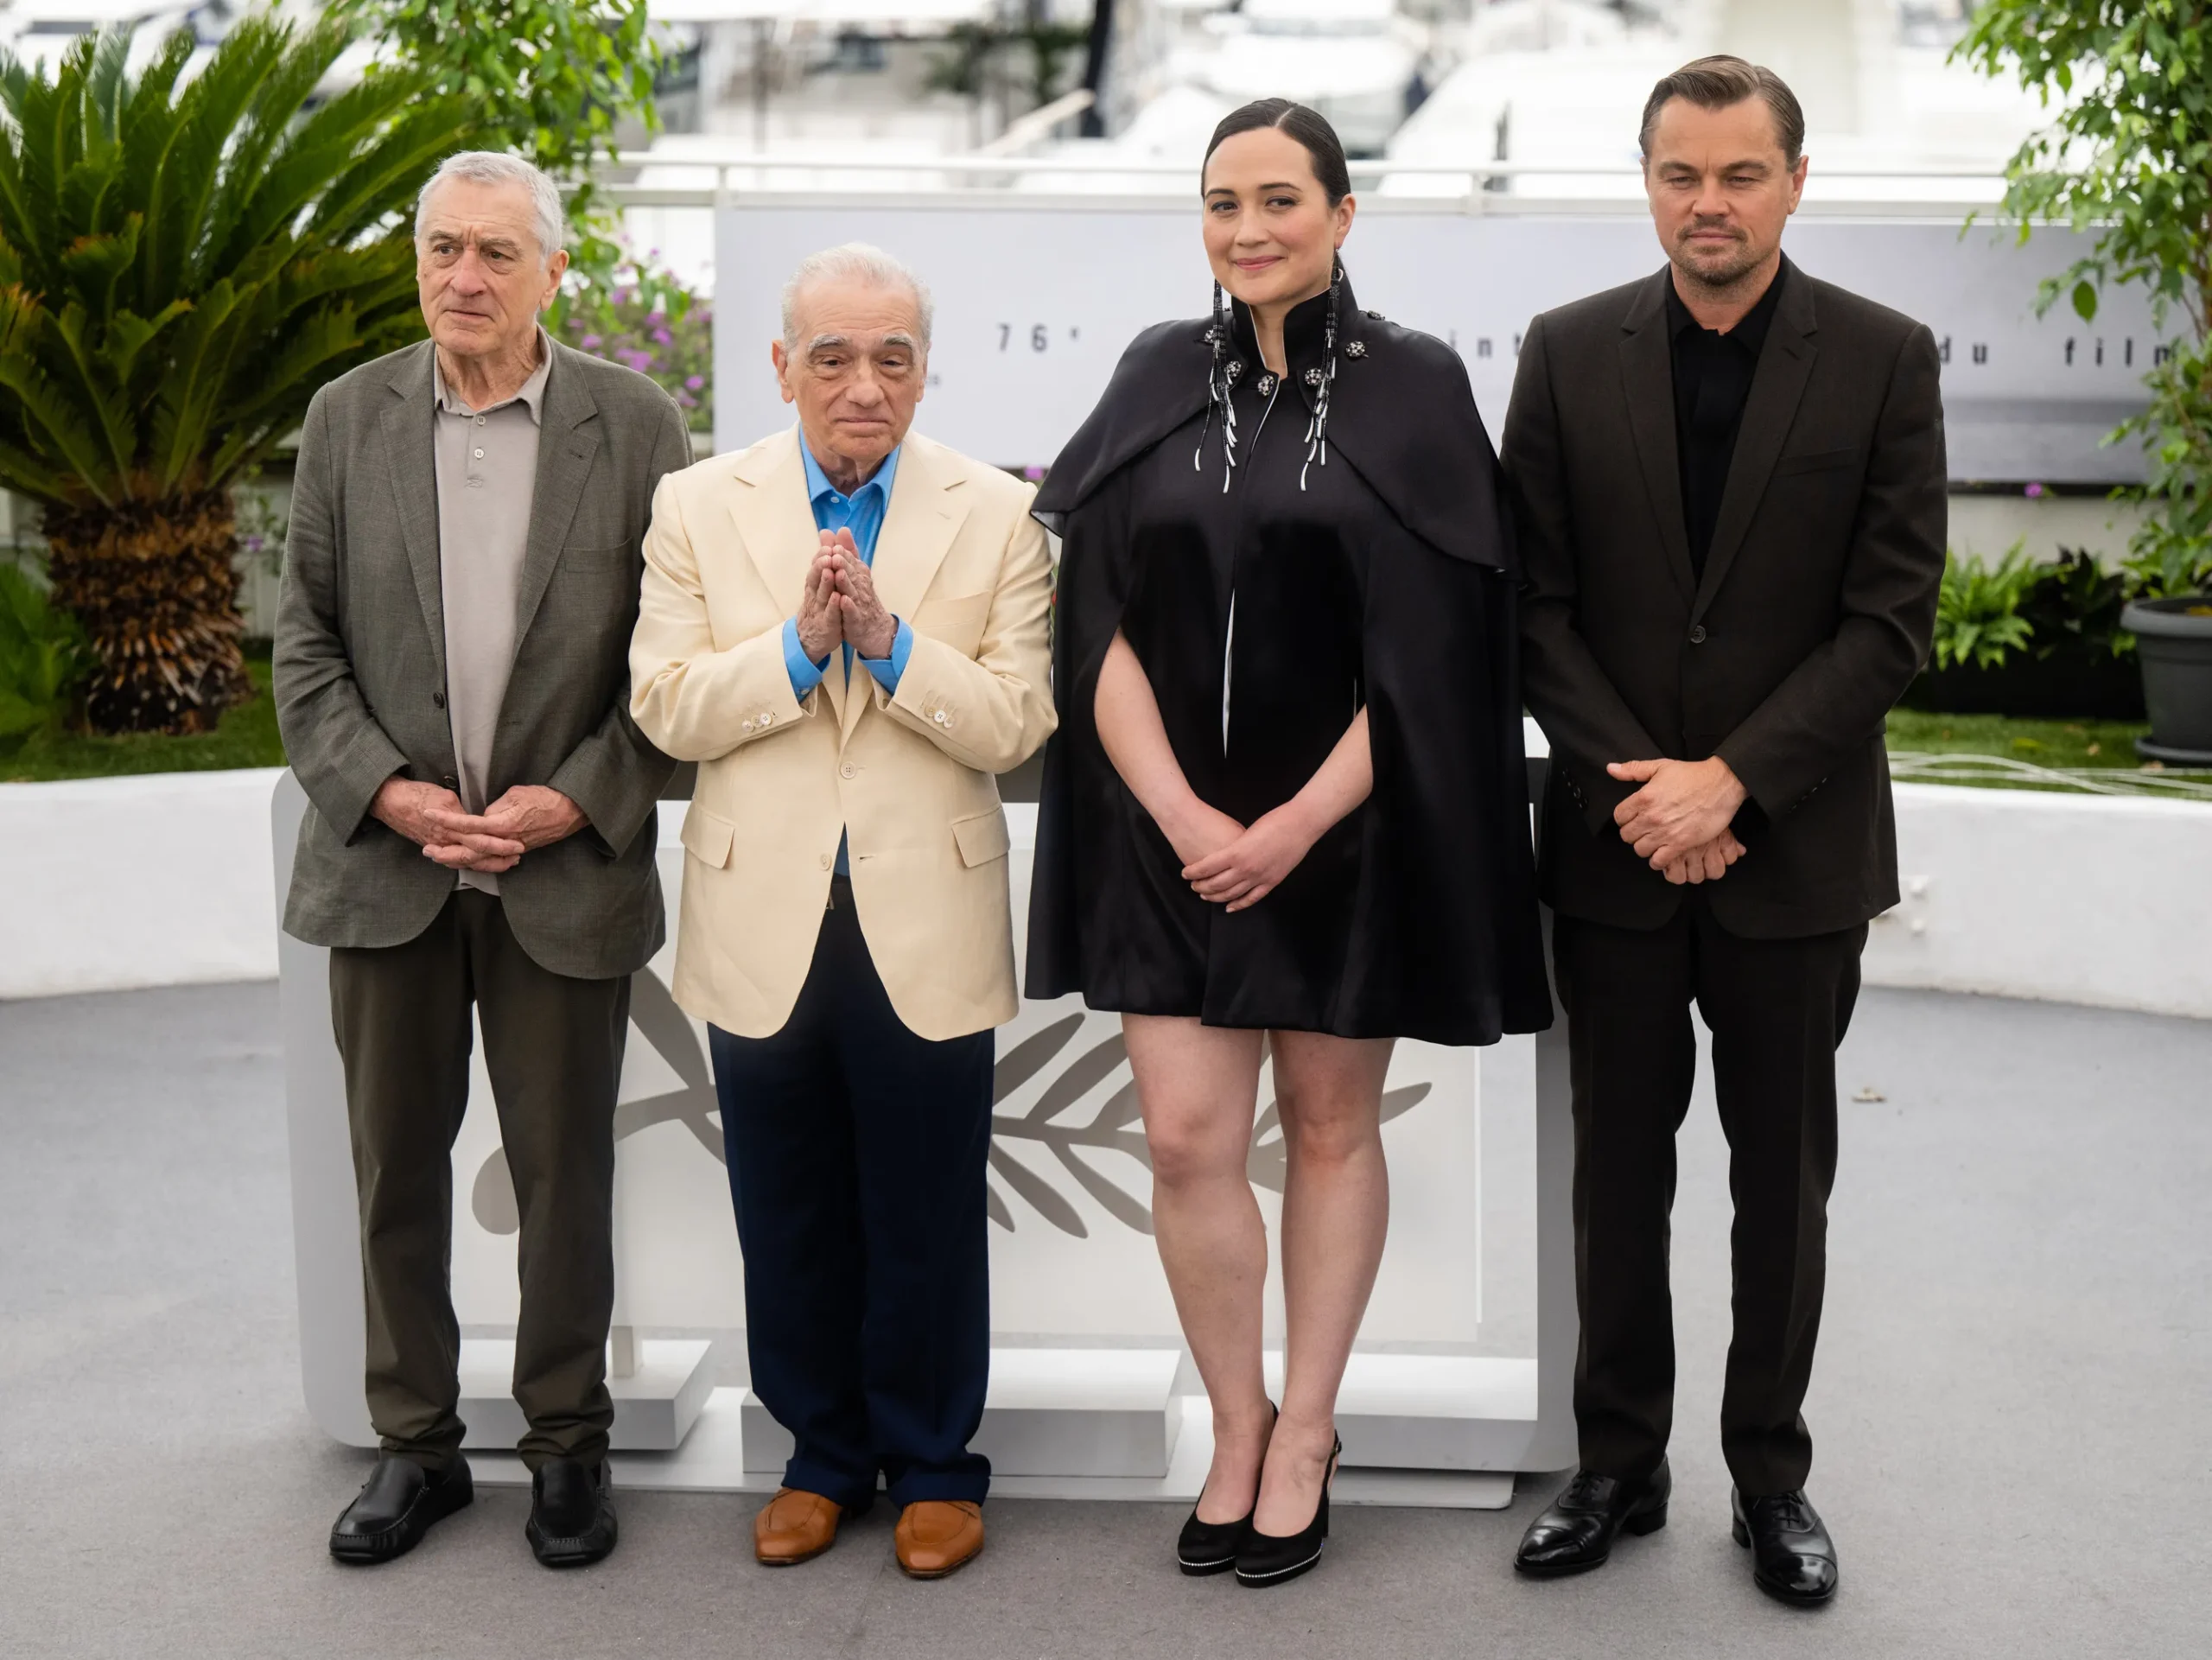 Martin Scorsese, Leonardo DiCaprio, Robert De Niro, and Lily Gladstone at the 76th Cannes Film Festival